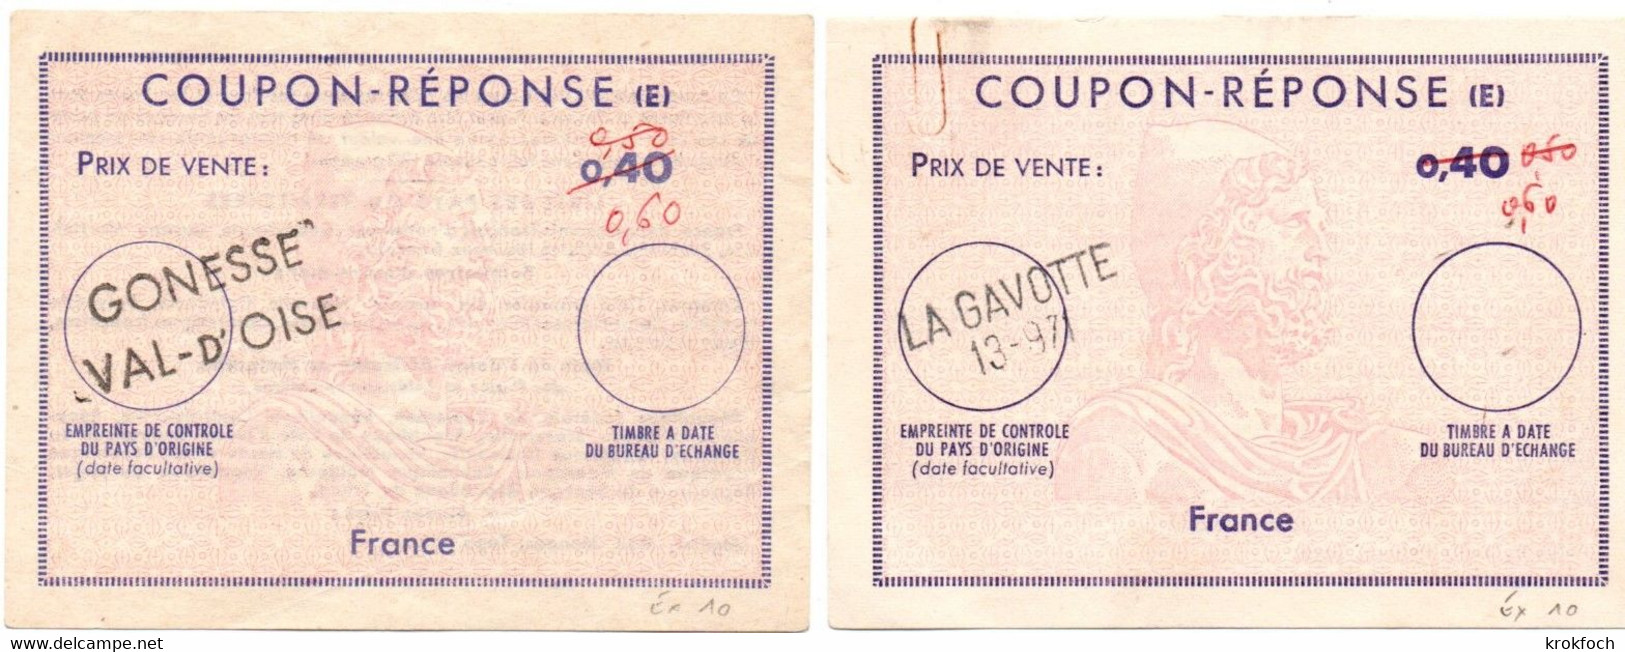 France - 2 Coupon-réponse Type Ex 10 - Griffe La Gavotte 13-971 & Gonesse Val D'Oise - IAS CRI IRC - Antwortscheine